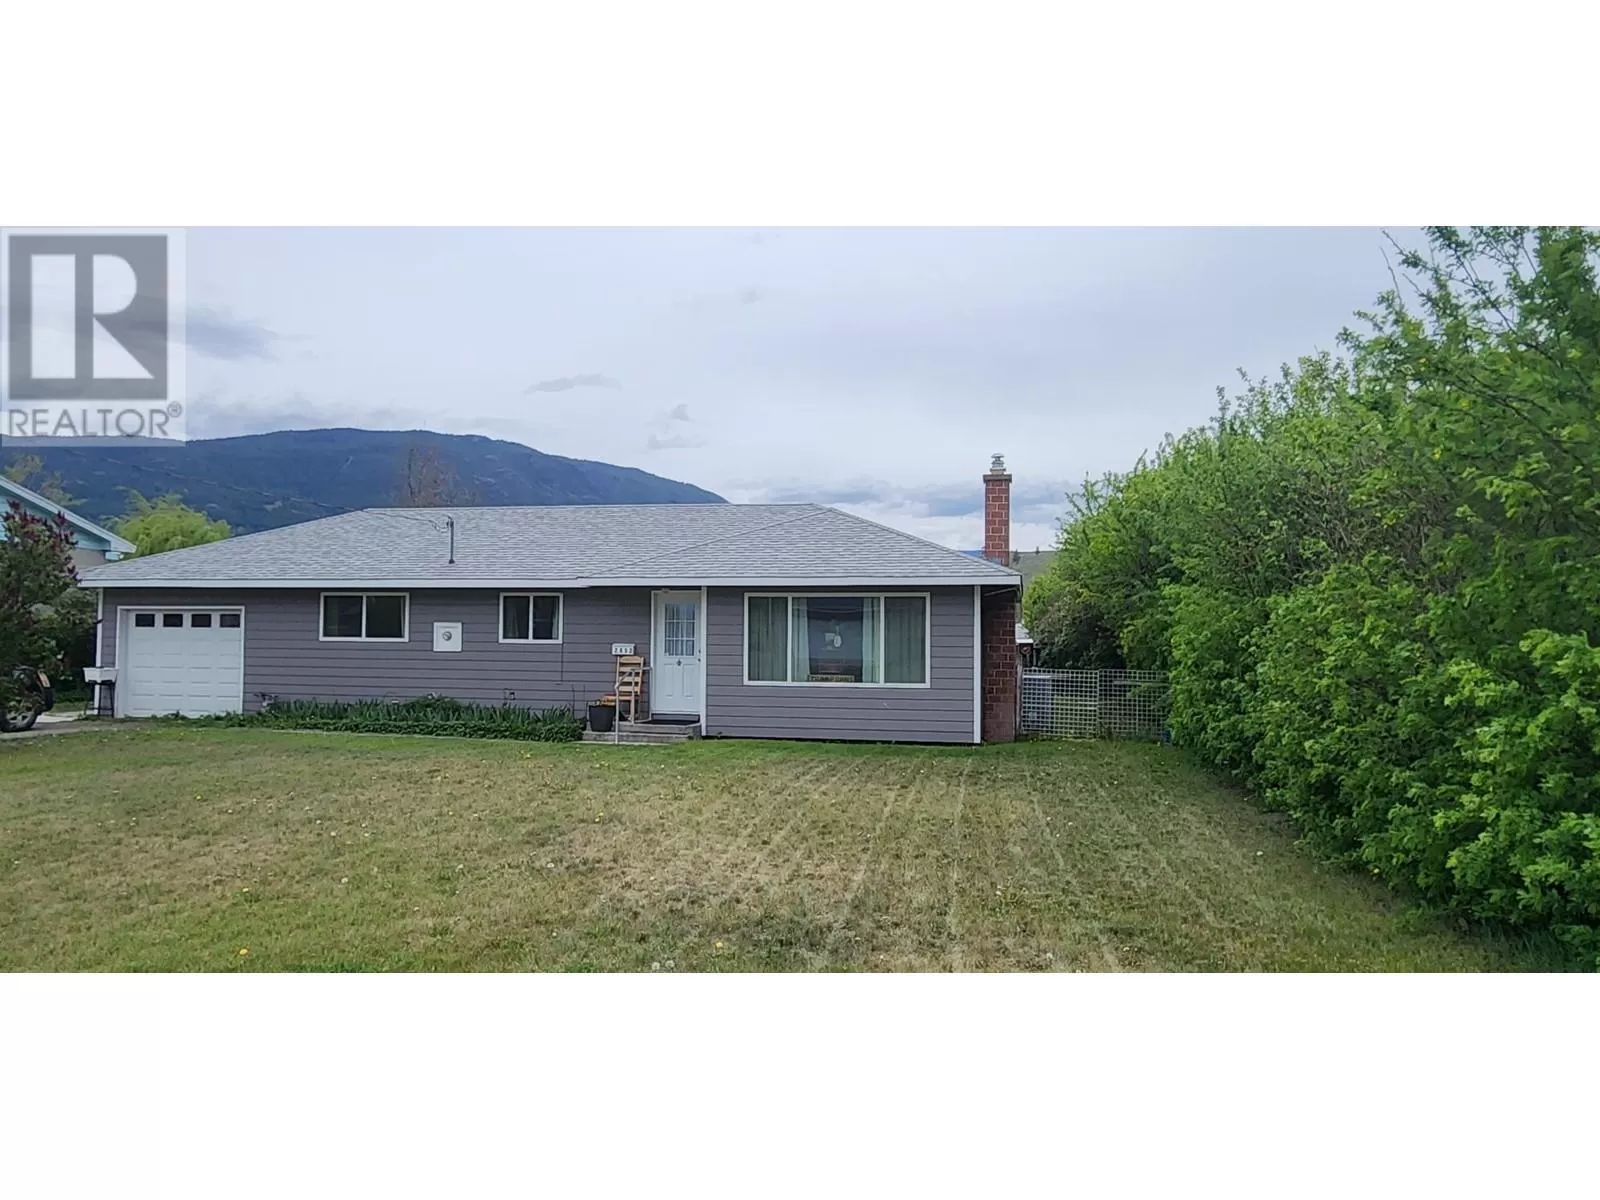 House for rent: 2652 Priest Ave, Merritt, British Columbia V1K 1B6